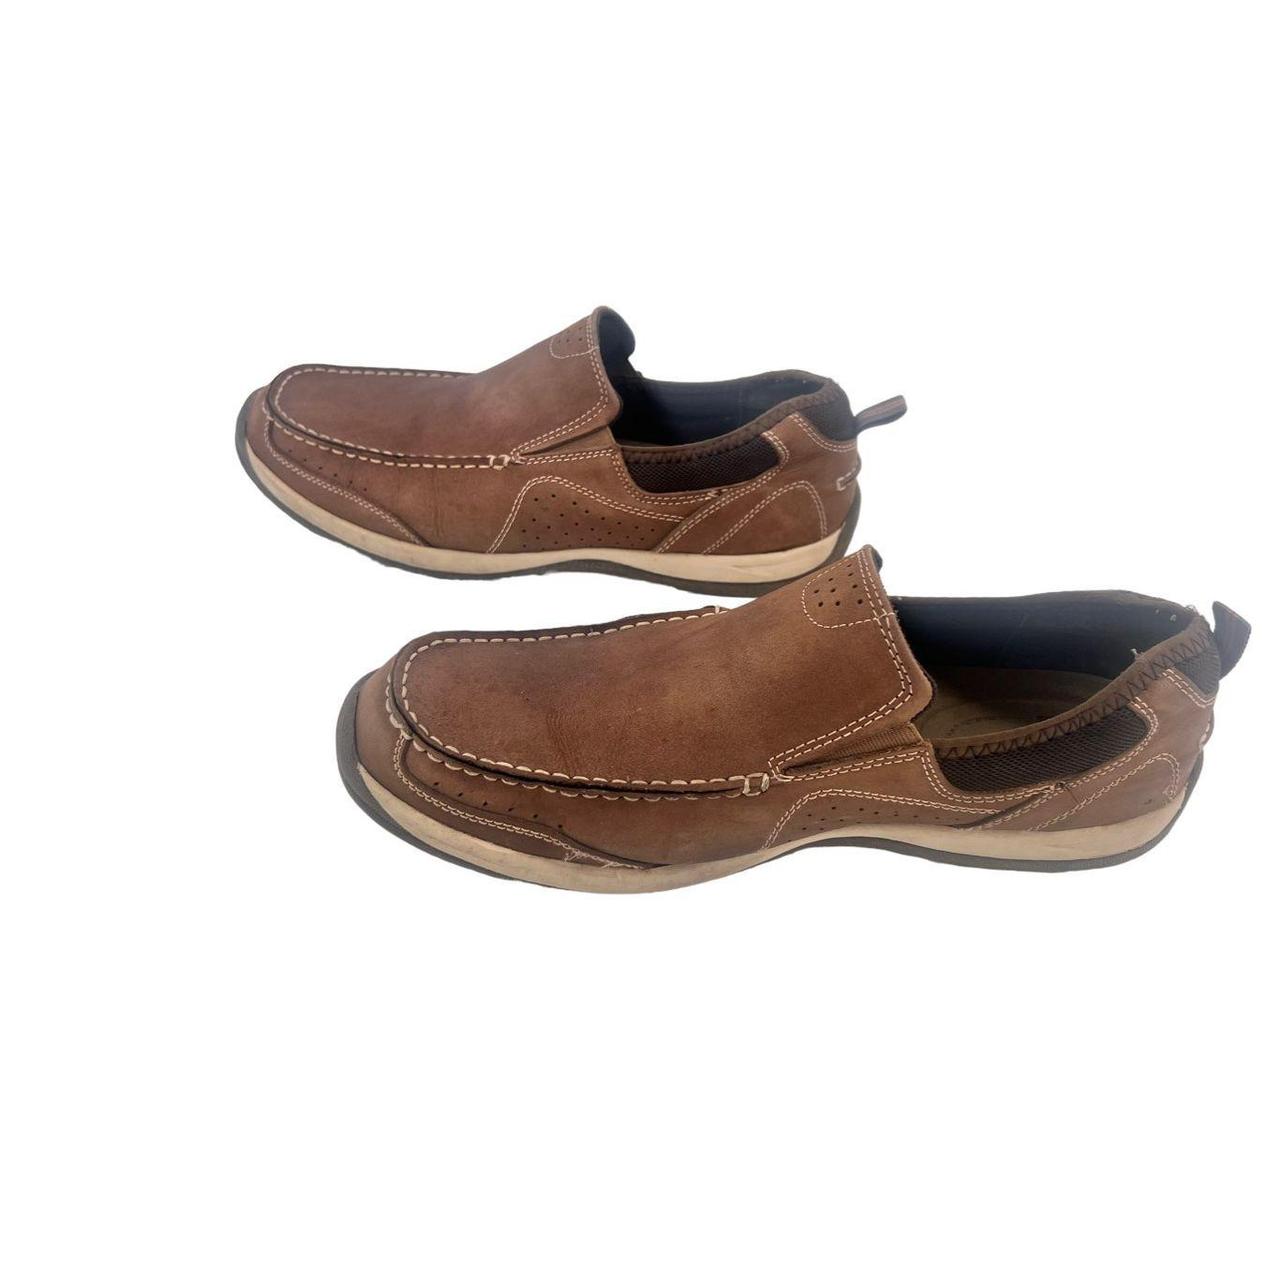 MAGELLAN Outdoors Men's Hiking Shoes Brown - Depop